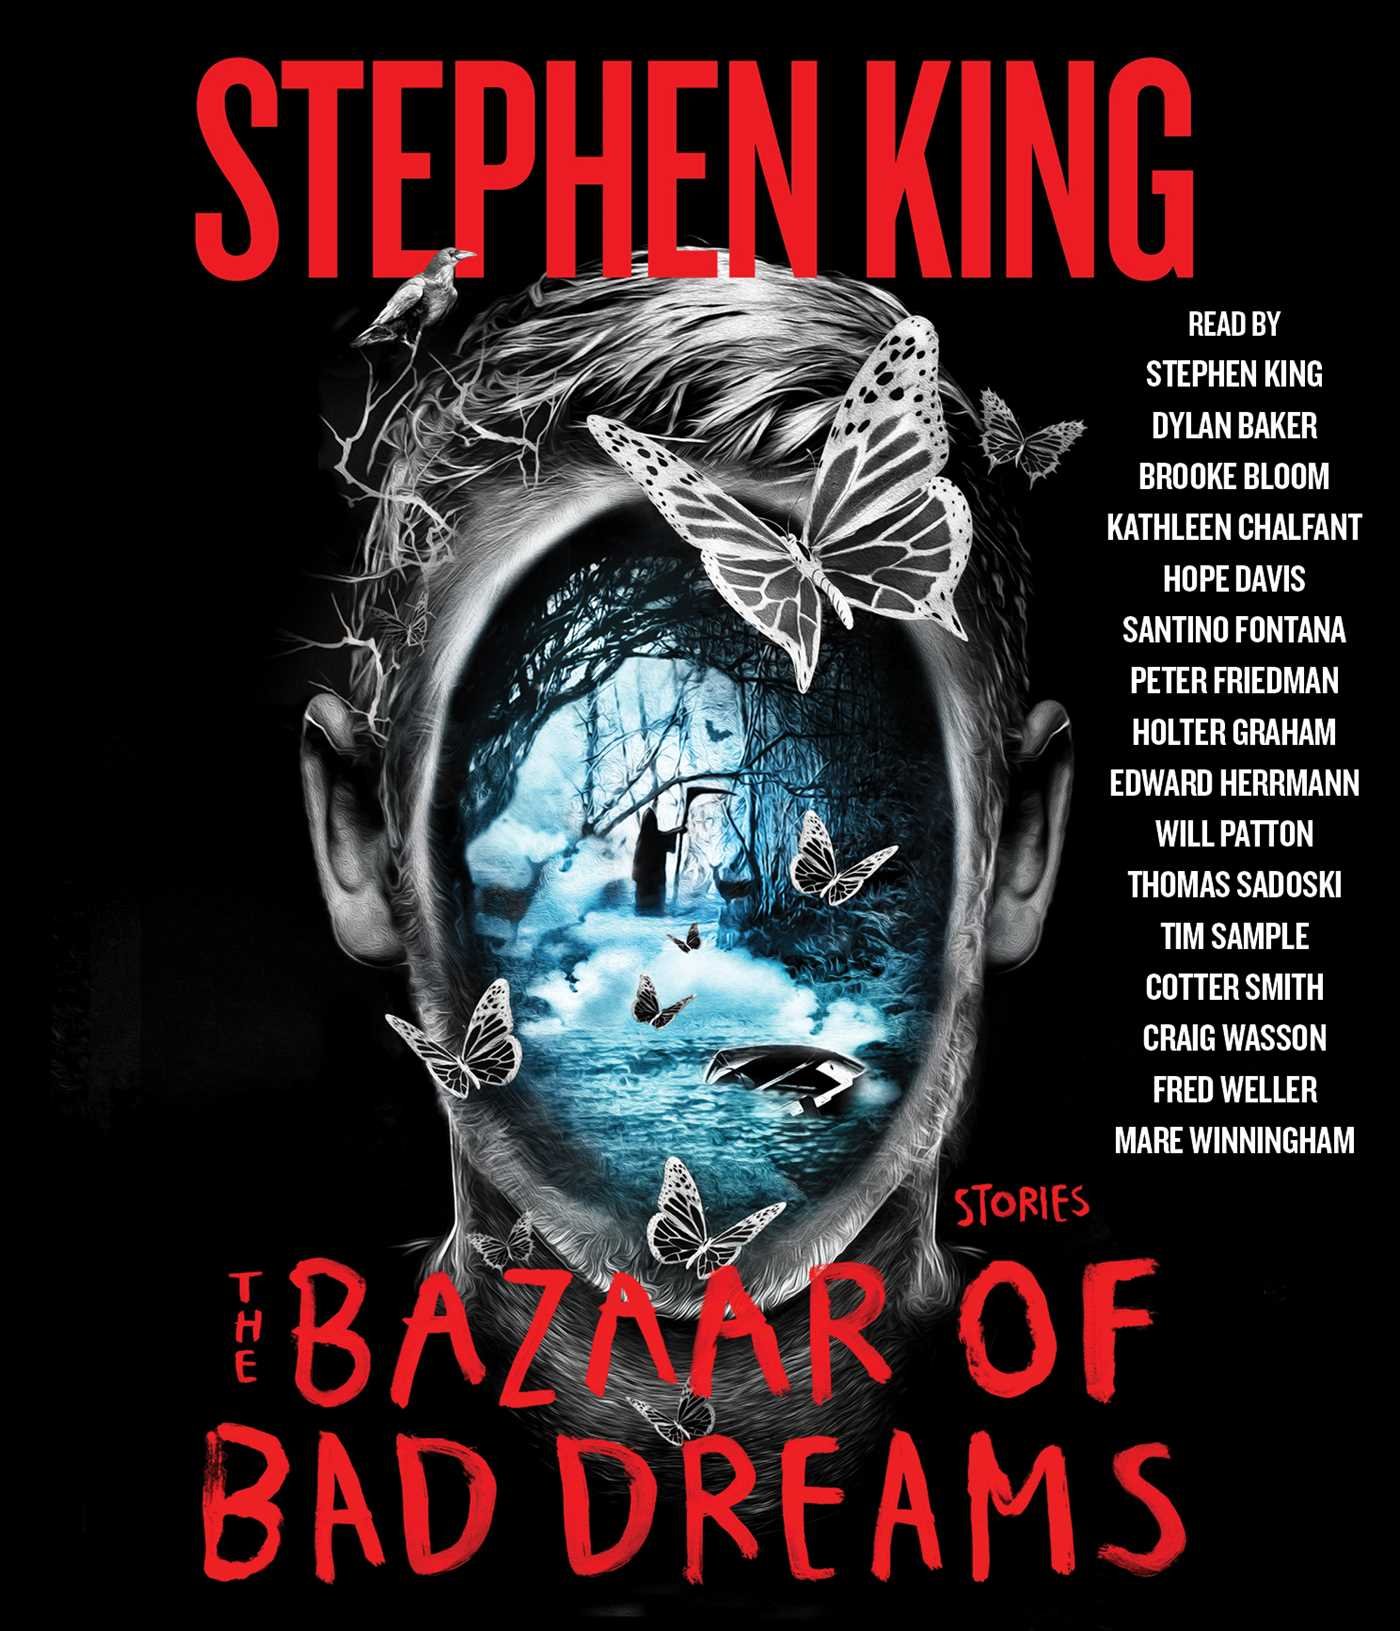 The Bazaar of Bad Dreams - Audiobook